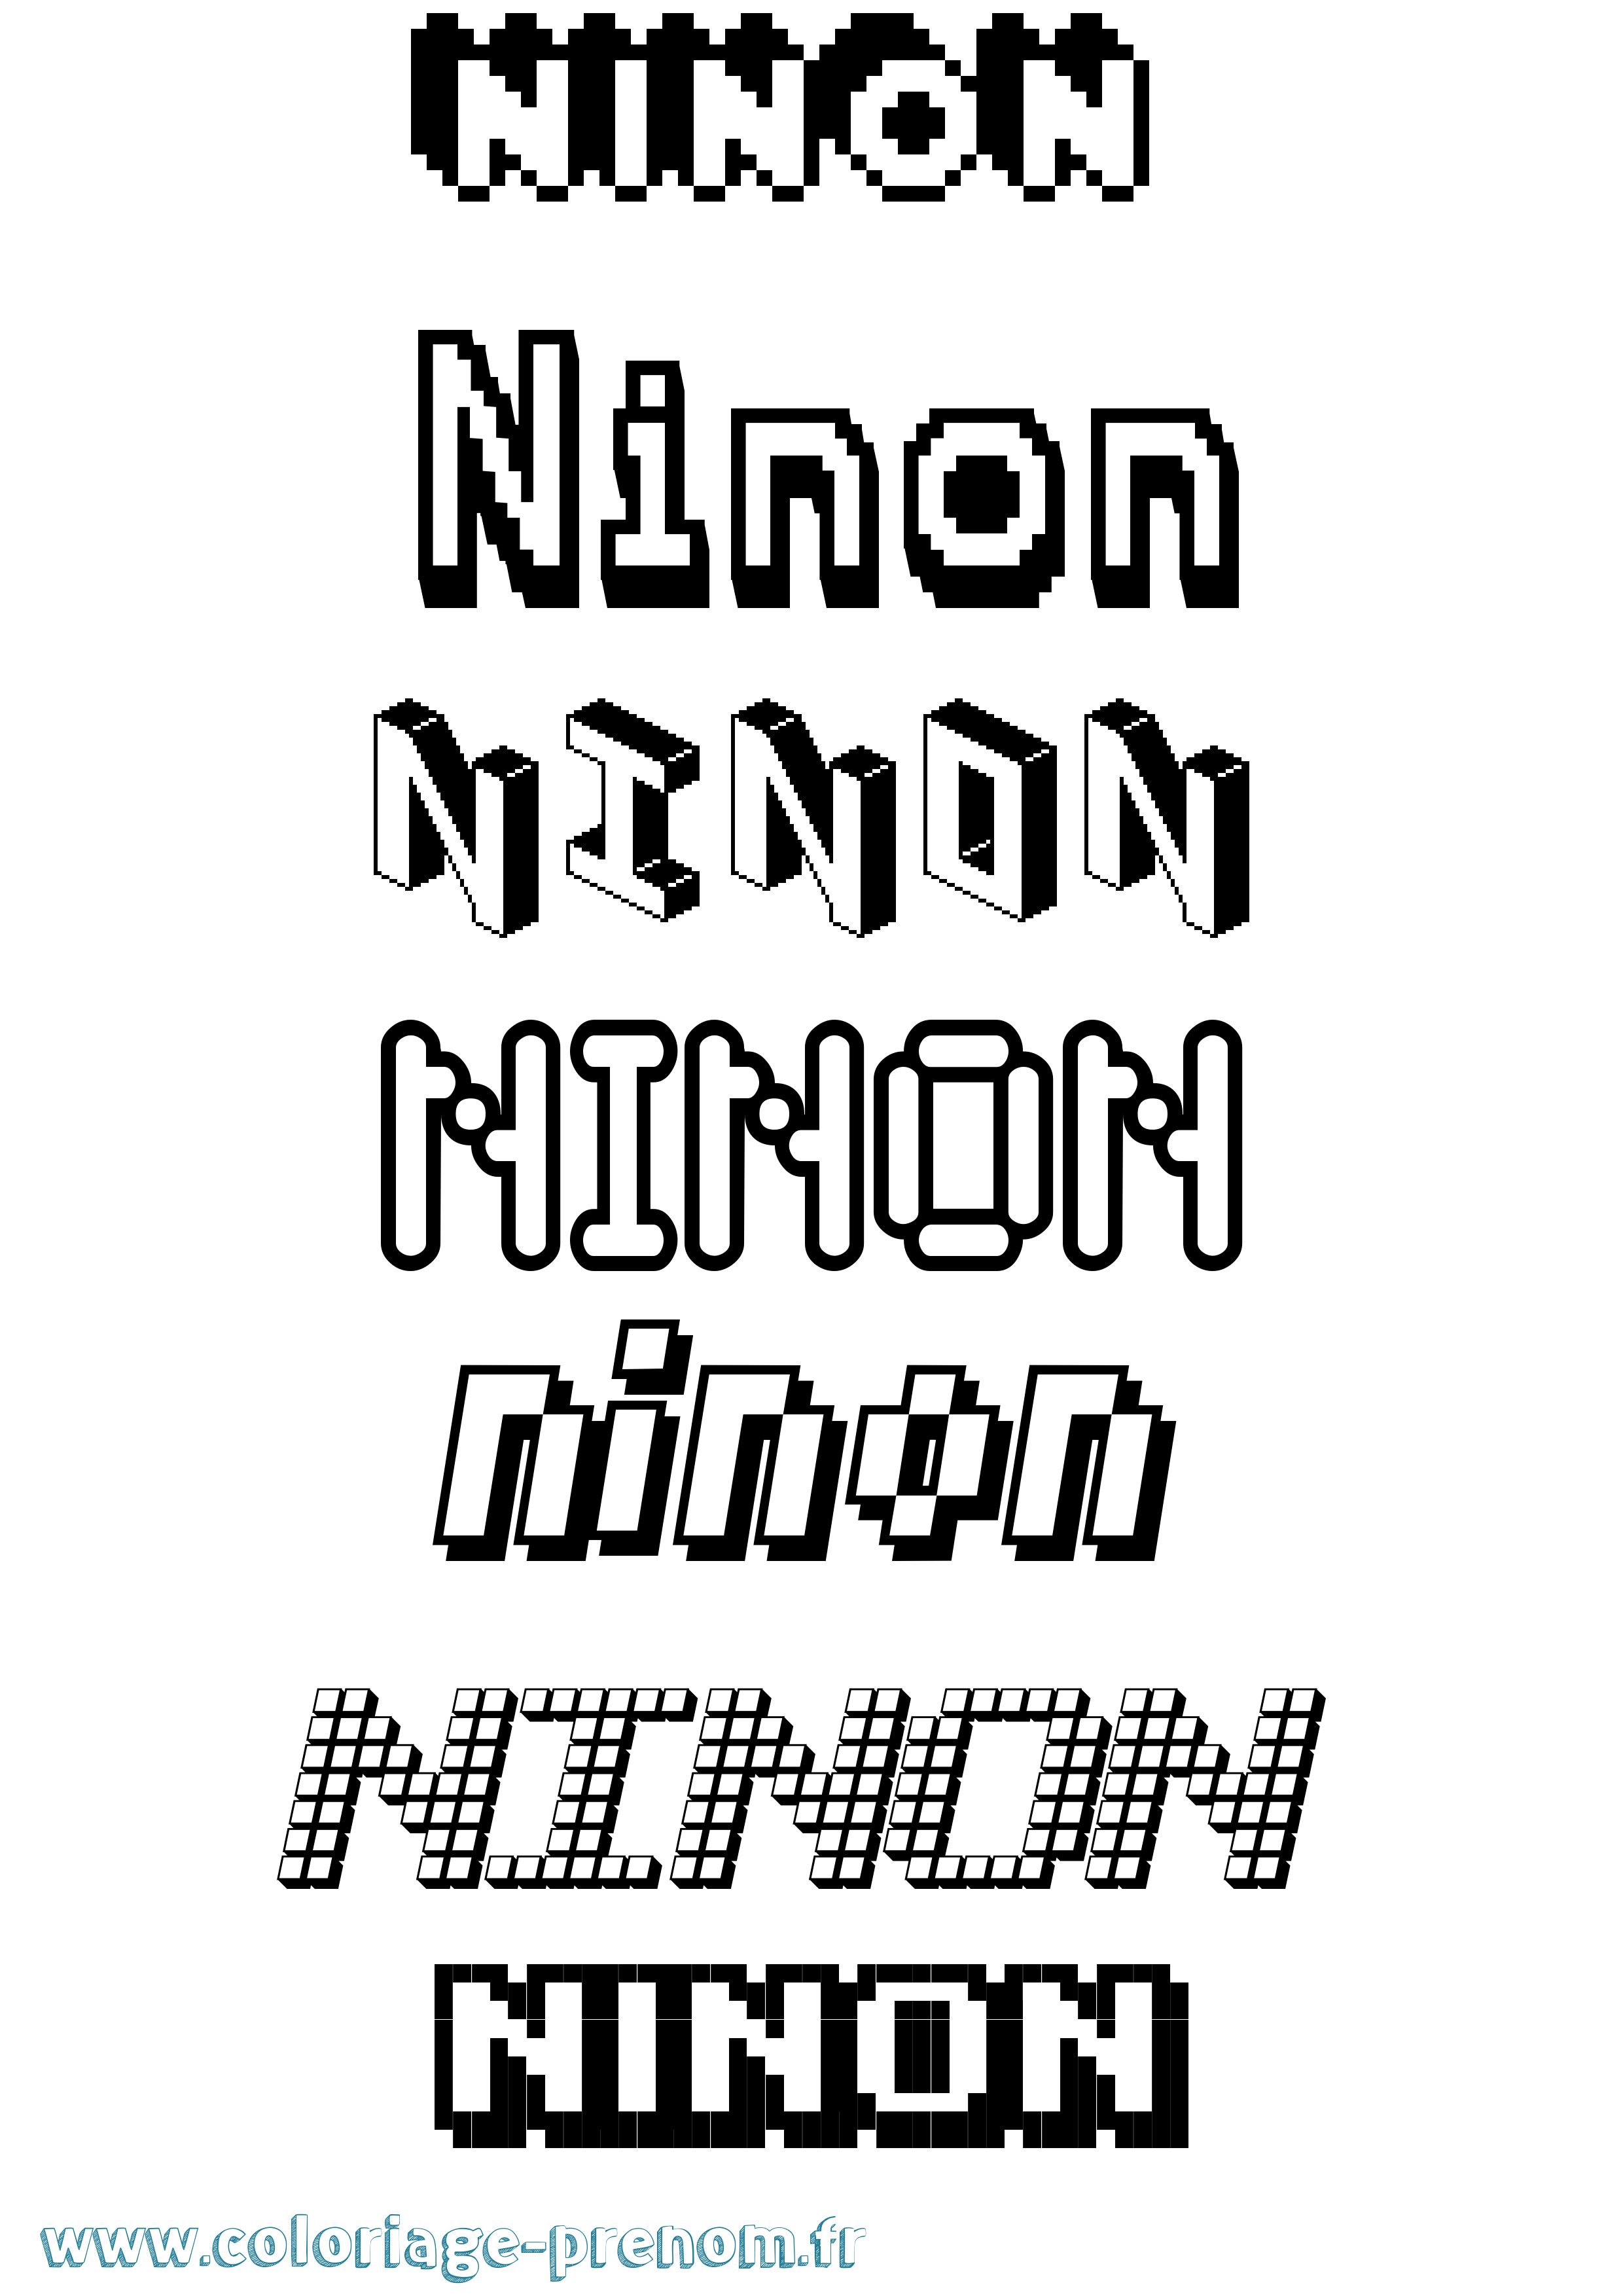 Coloriage prénom Ninon